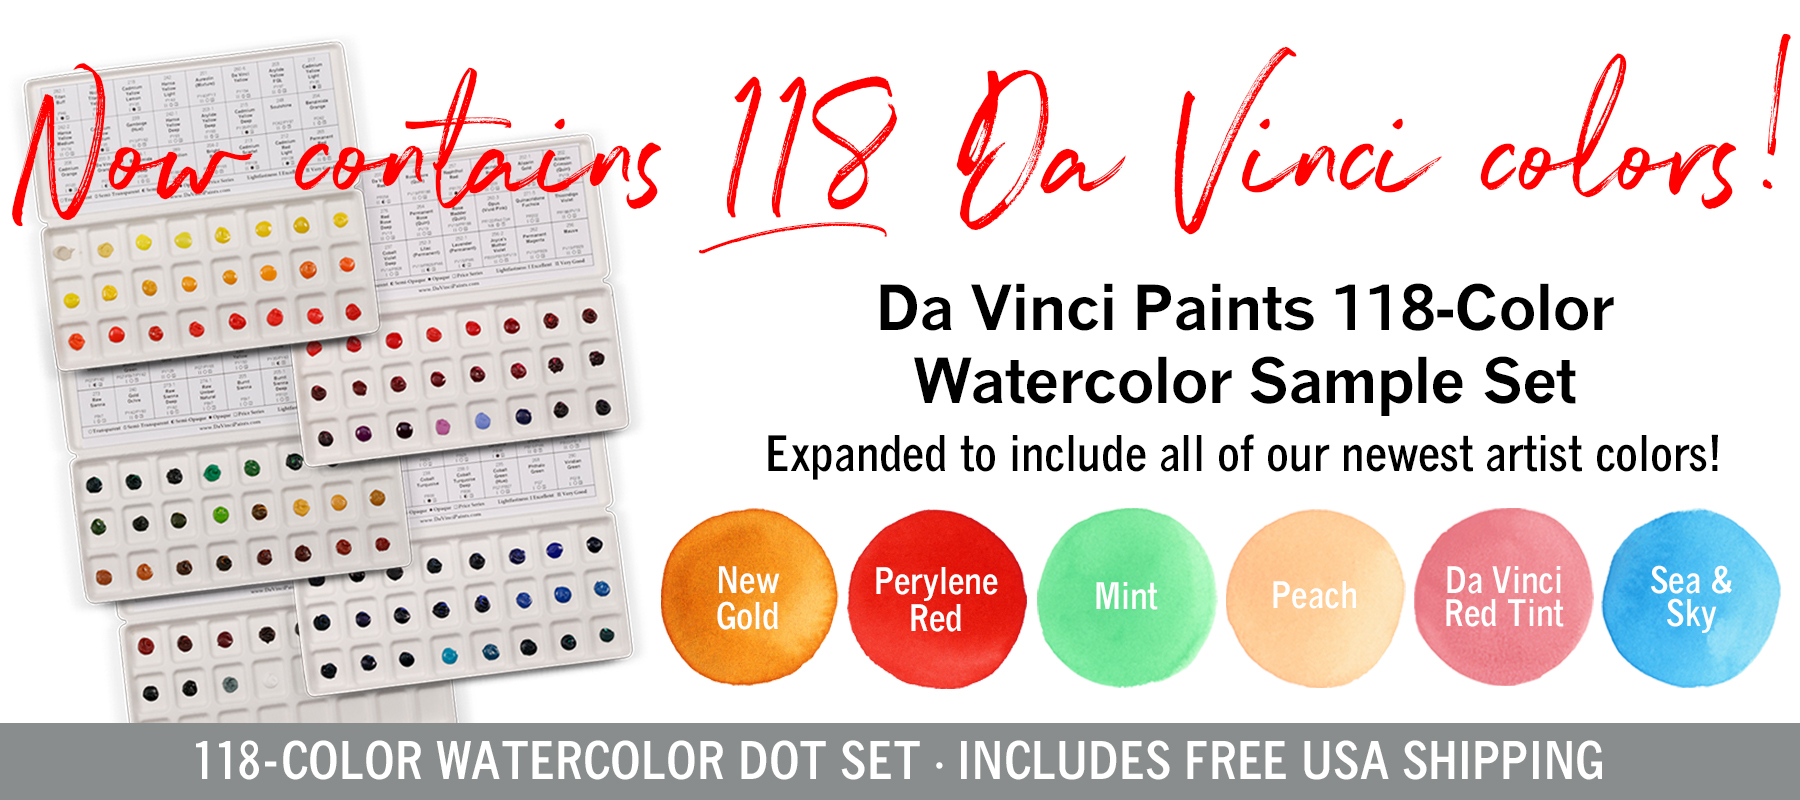 Da Vinci Violet Iron Oxide Artist Watercolor Paint – 15ml